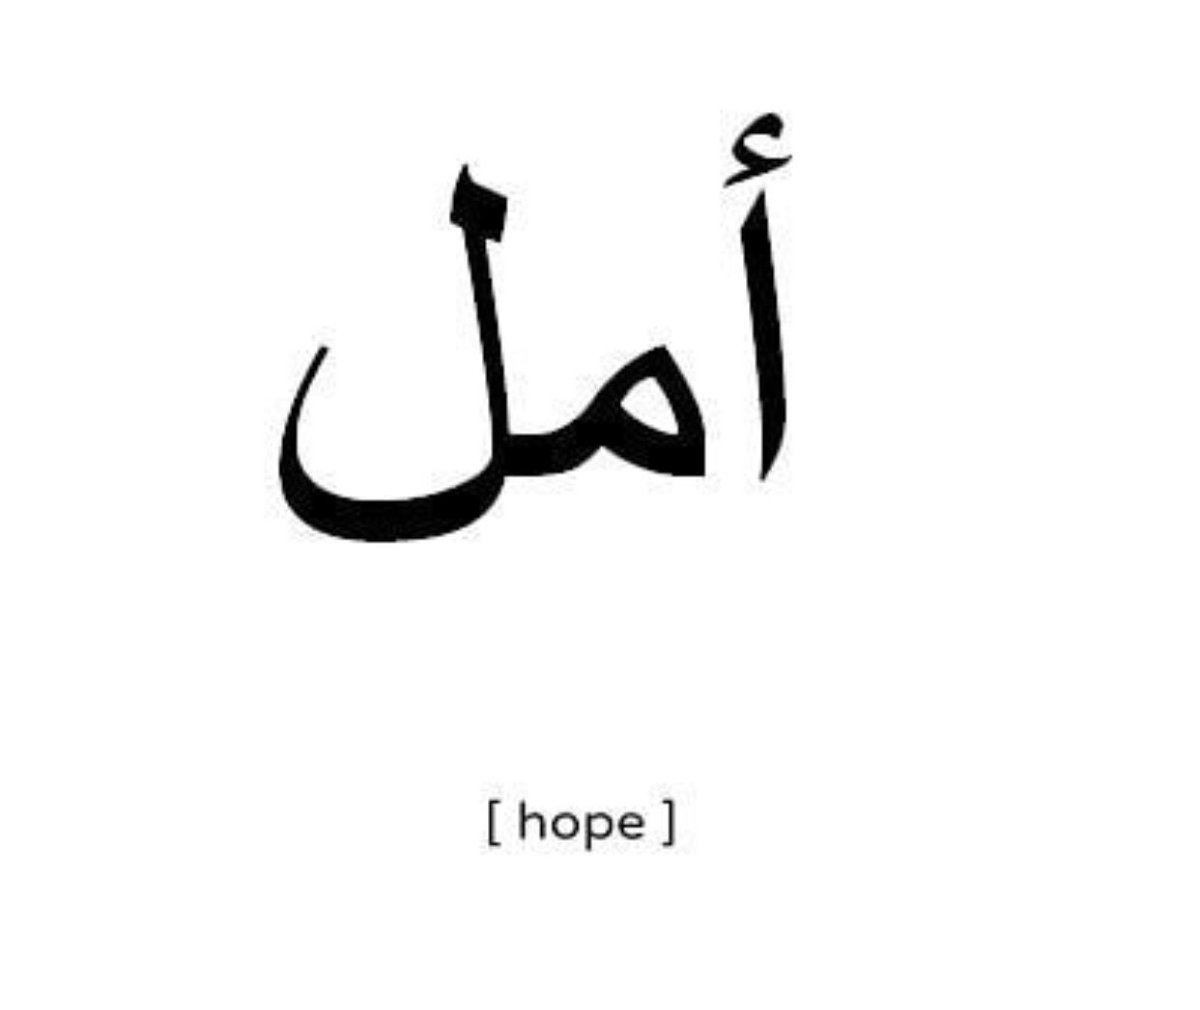 Слава на арабском